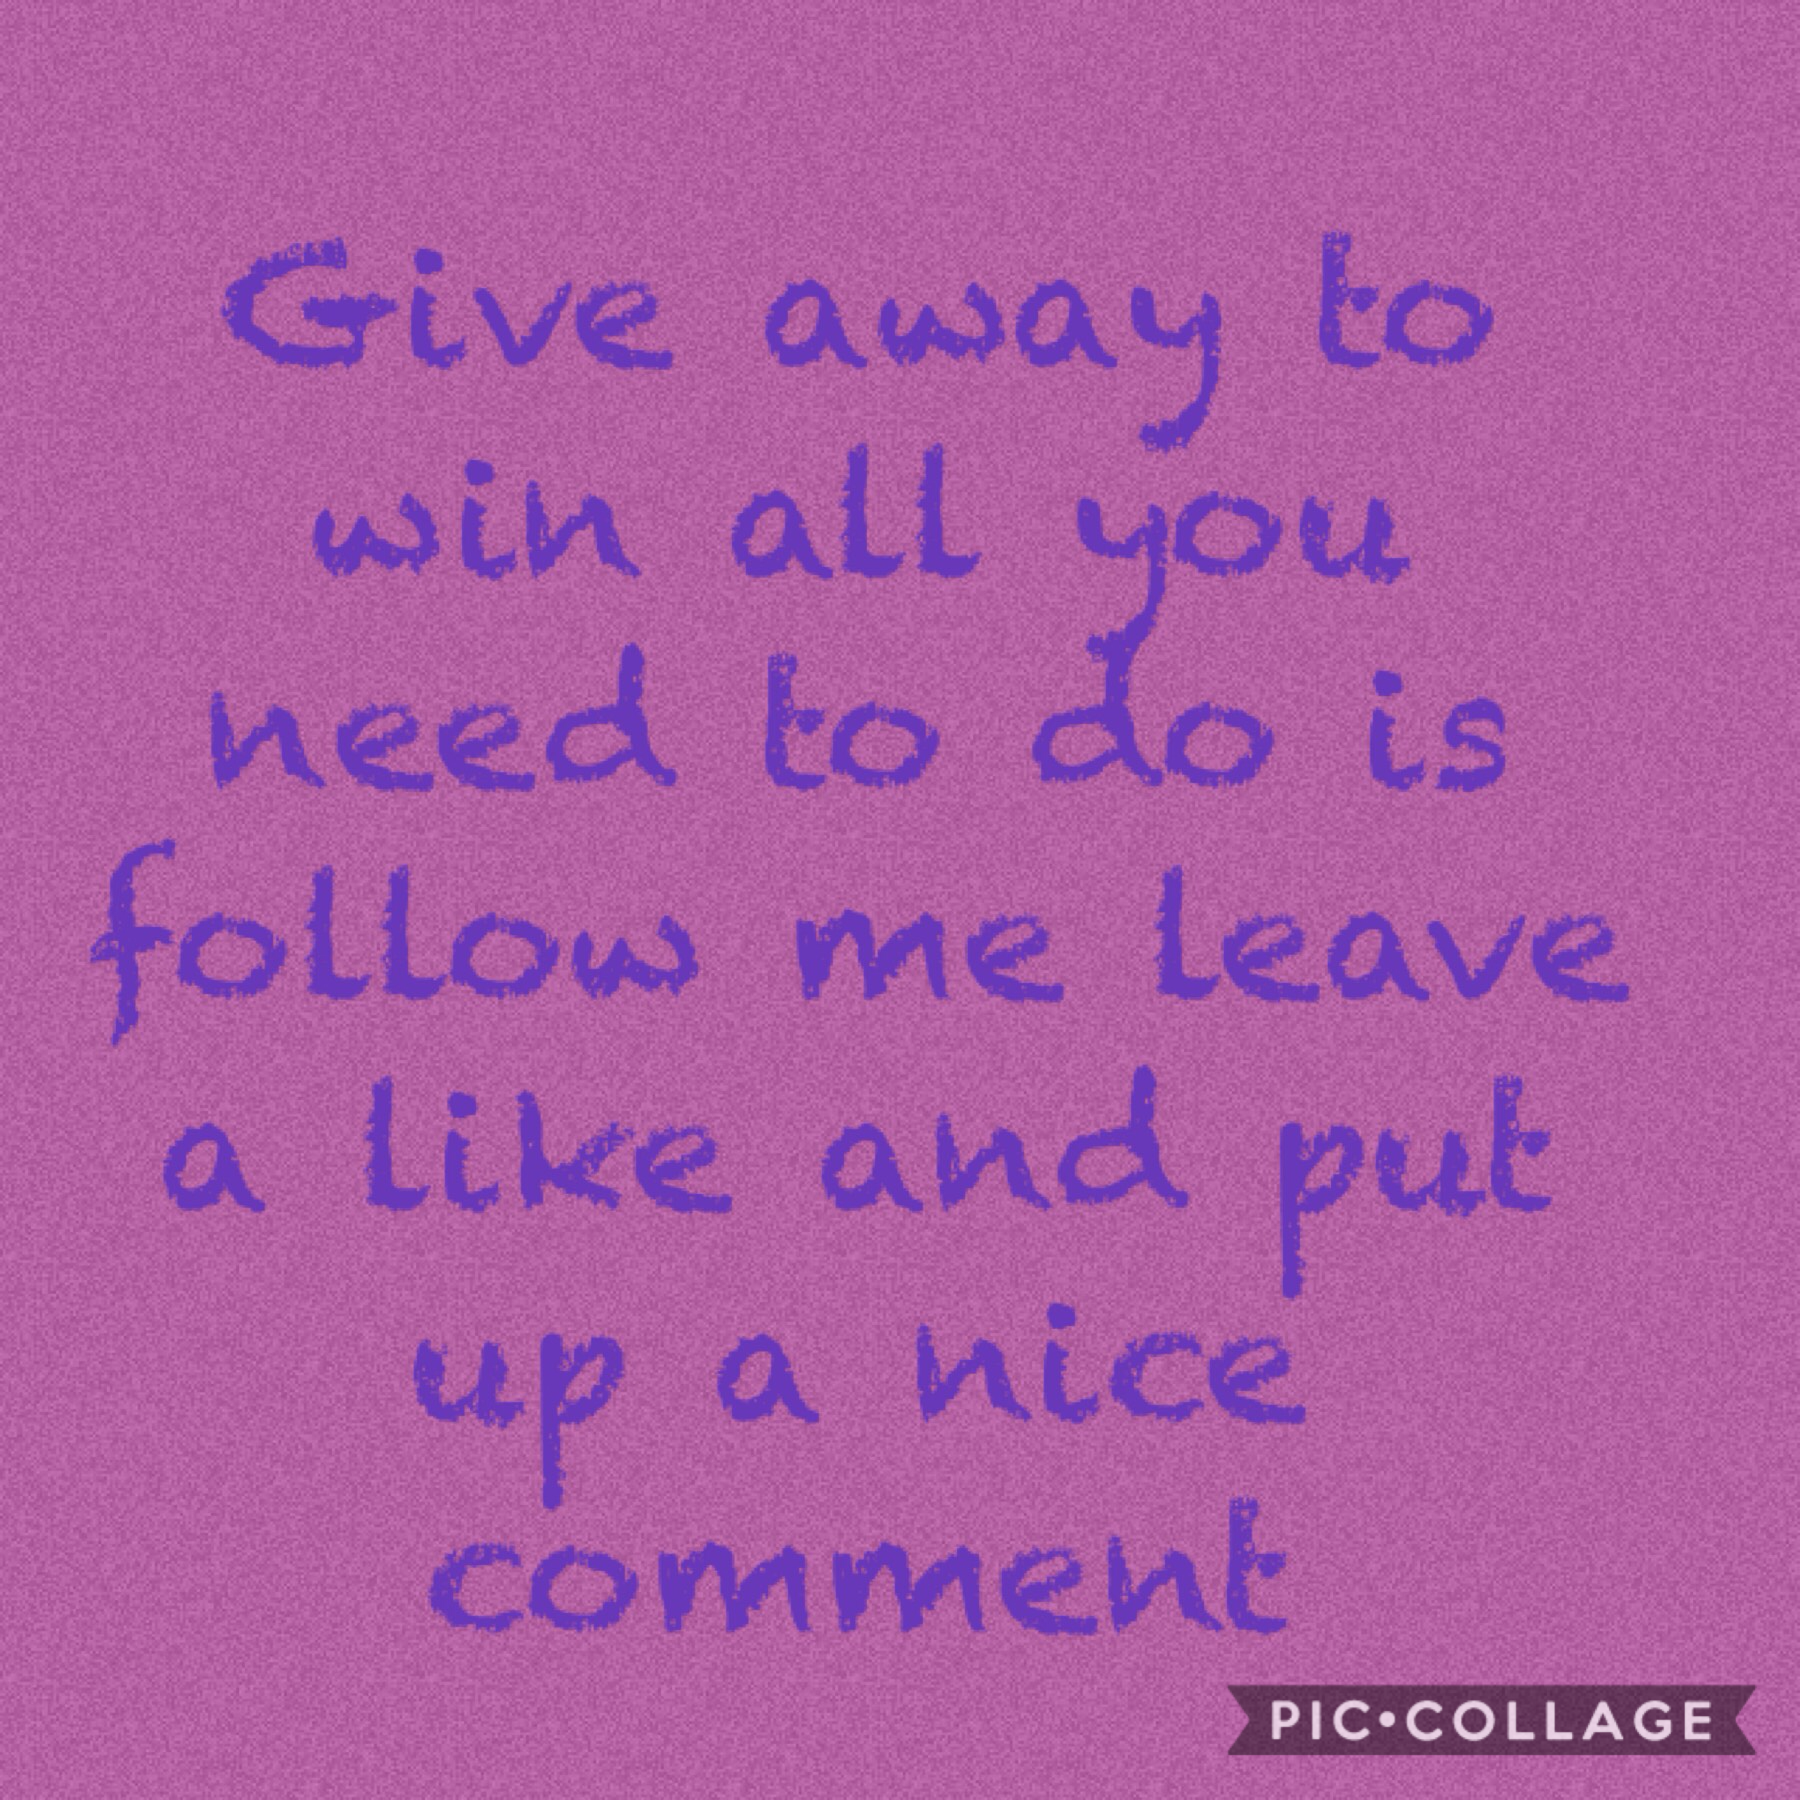 Please do it